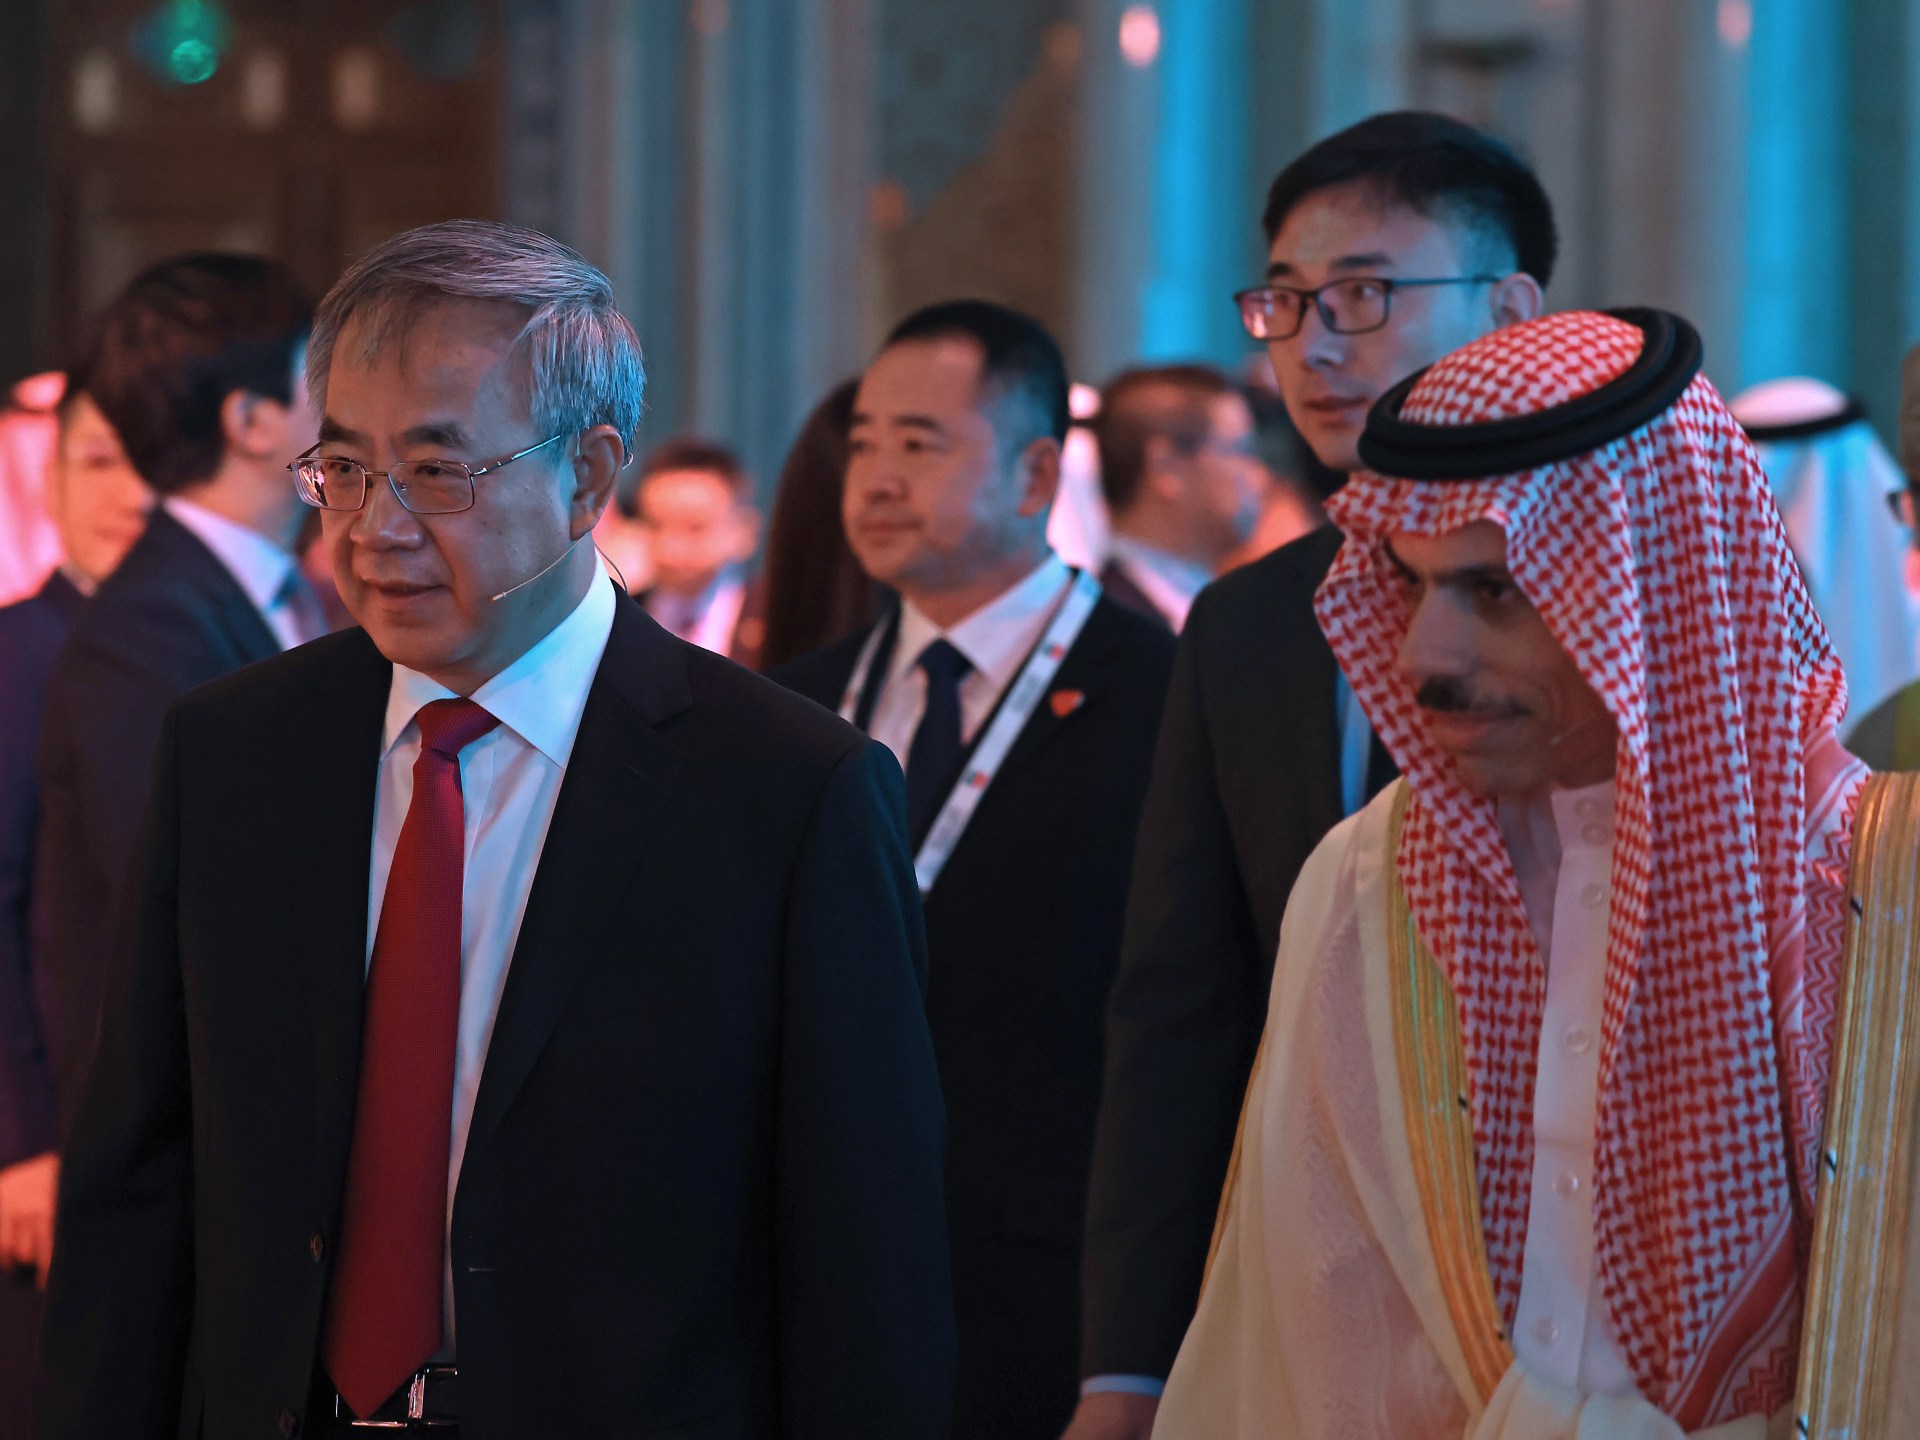 المملكة العربية السعودية توقع صفقة سيارات كهربائية بقيمة 5.6 مليار دولار في إطار تطلعها إلى علاقات أوثق مع الصين  أخبار الأعمال والاقتصاد